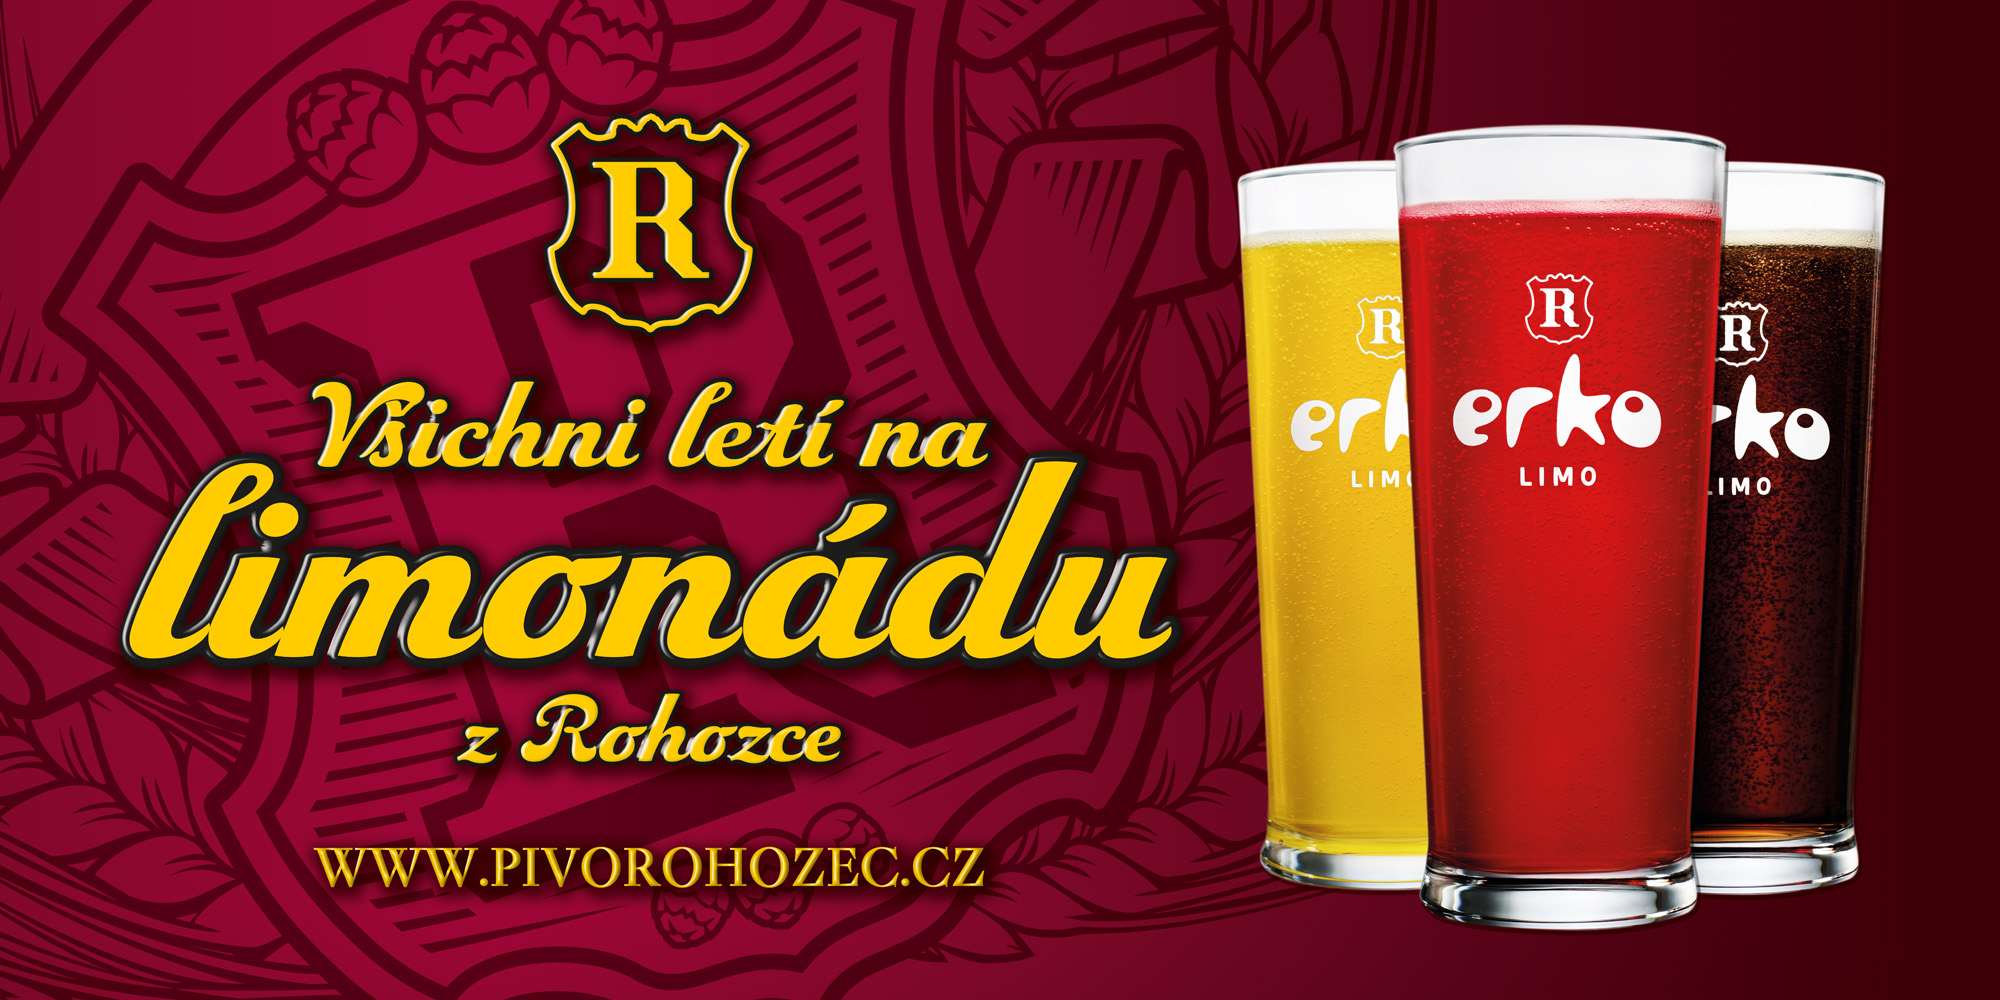 Spezialbiere aus der Rohozec Brauerei im Böhmischen Paradies, die Tschechische Republik